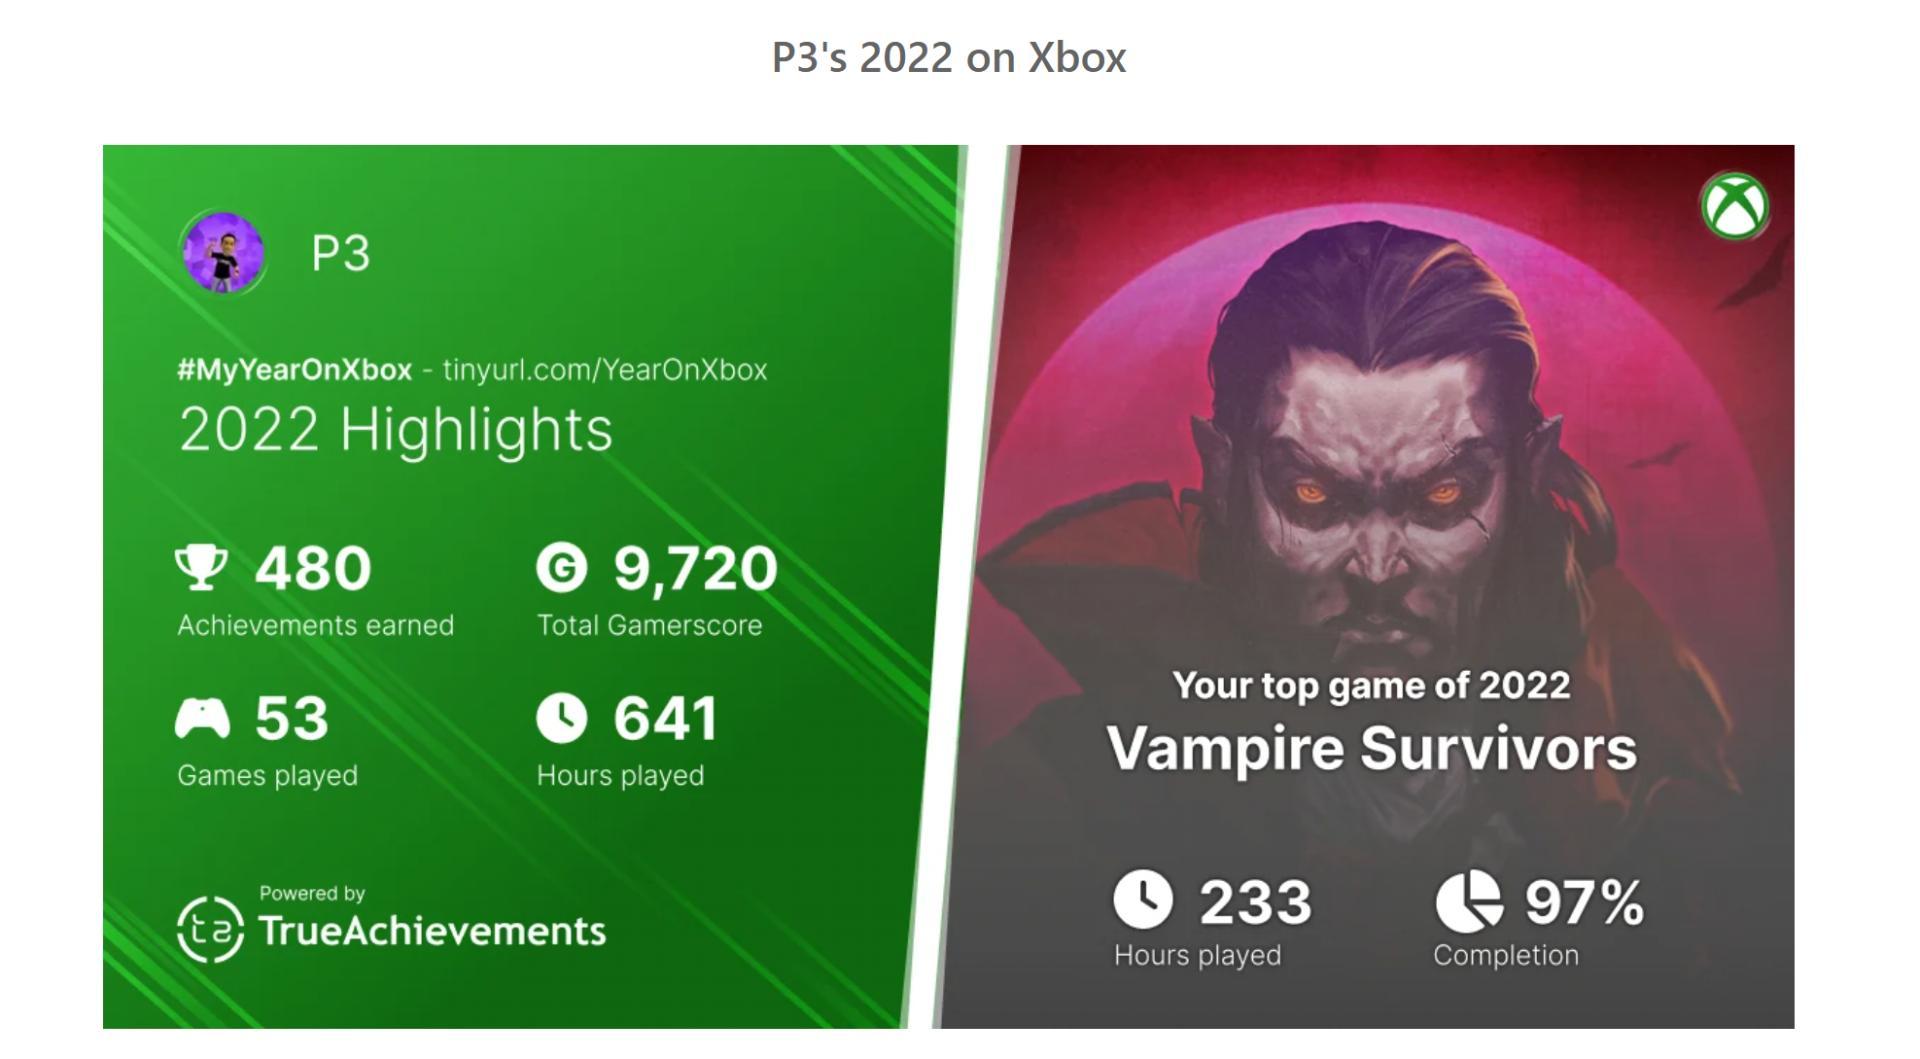 菲爾·斯賓塞分享了自己的2022年Xbox遊戲記錄